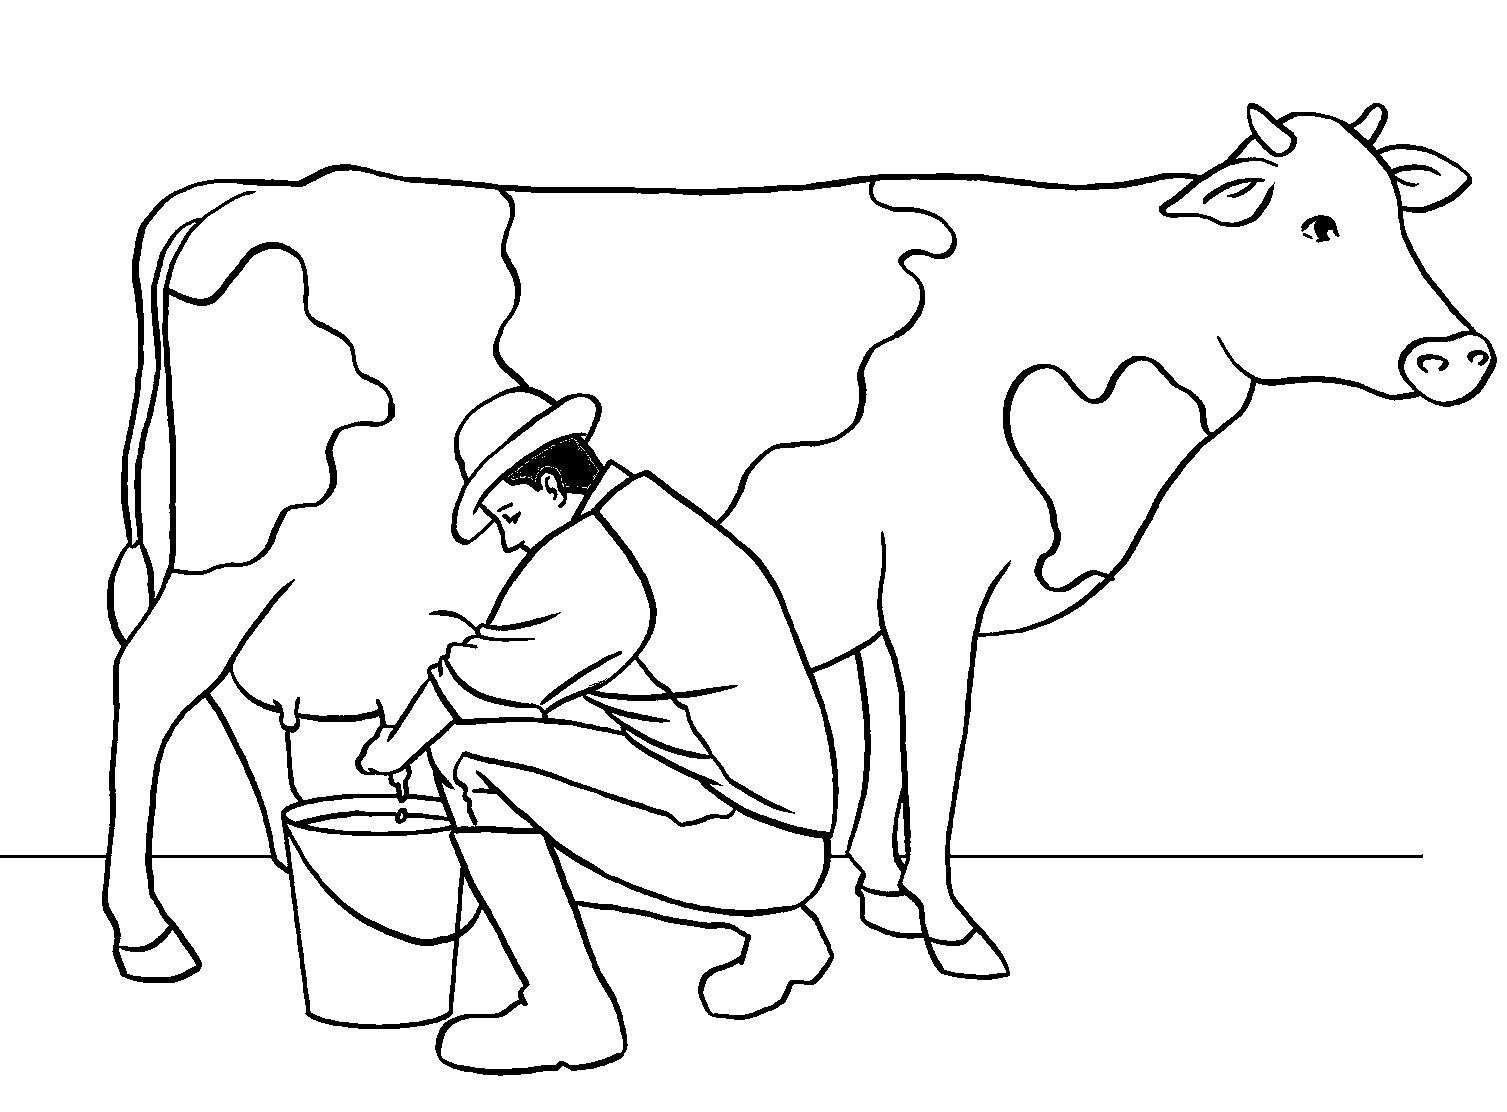 Kleurplaat van man die een koe melkt